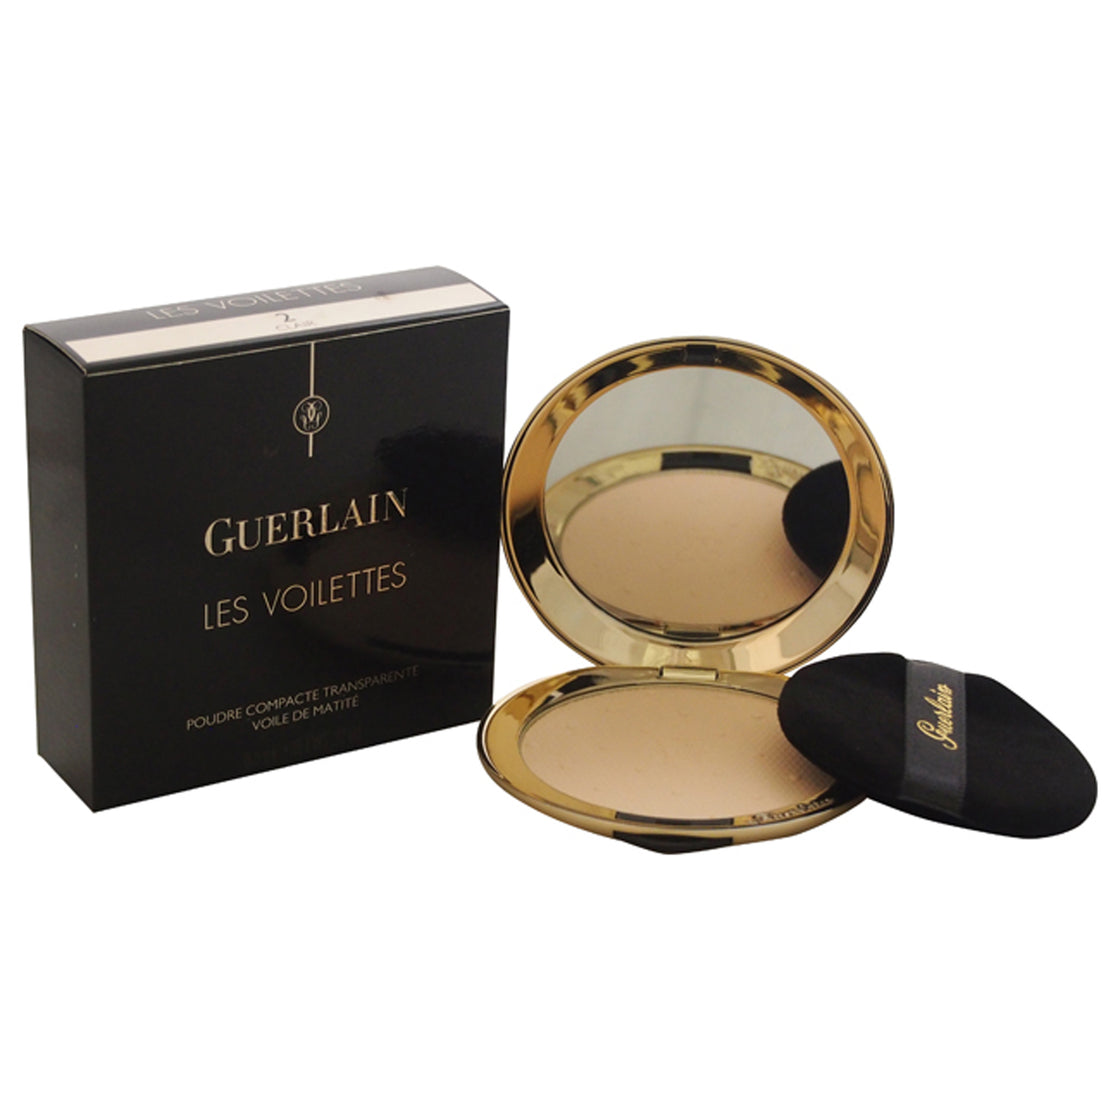 Les Voilettes Translucent Compact Powder - 2 Clair by Guerlain for Women - 0.22 oz Powder